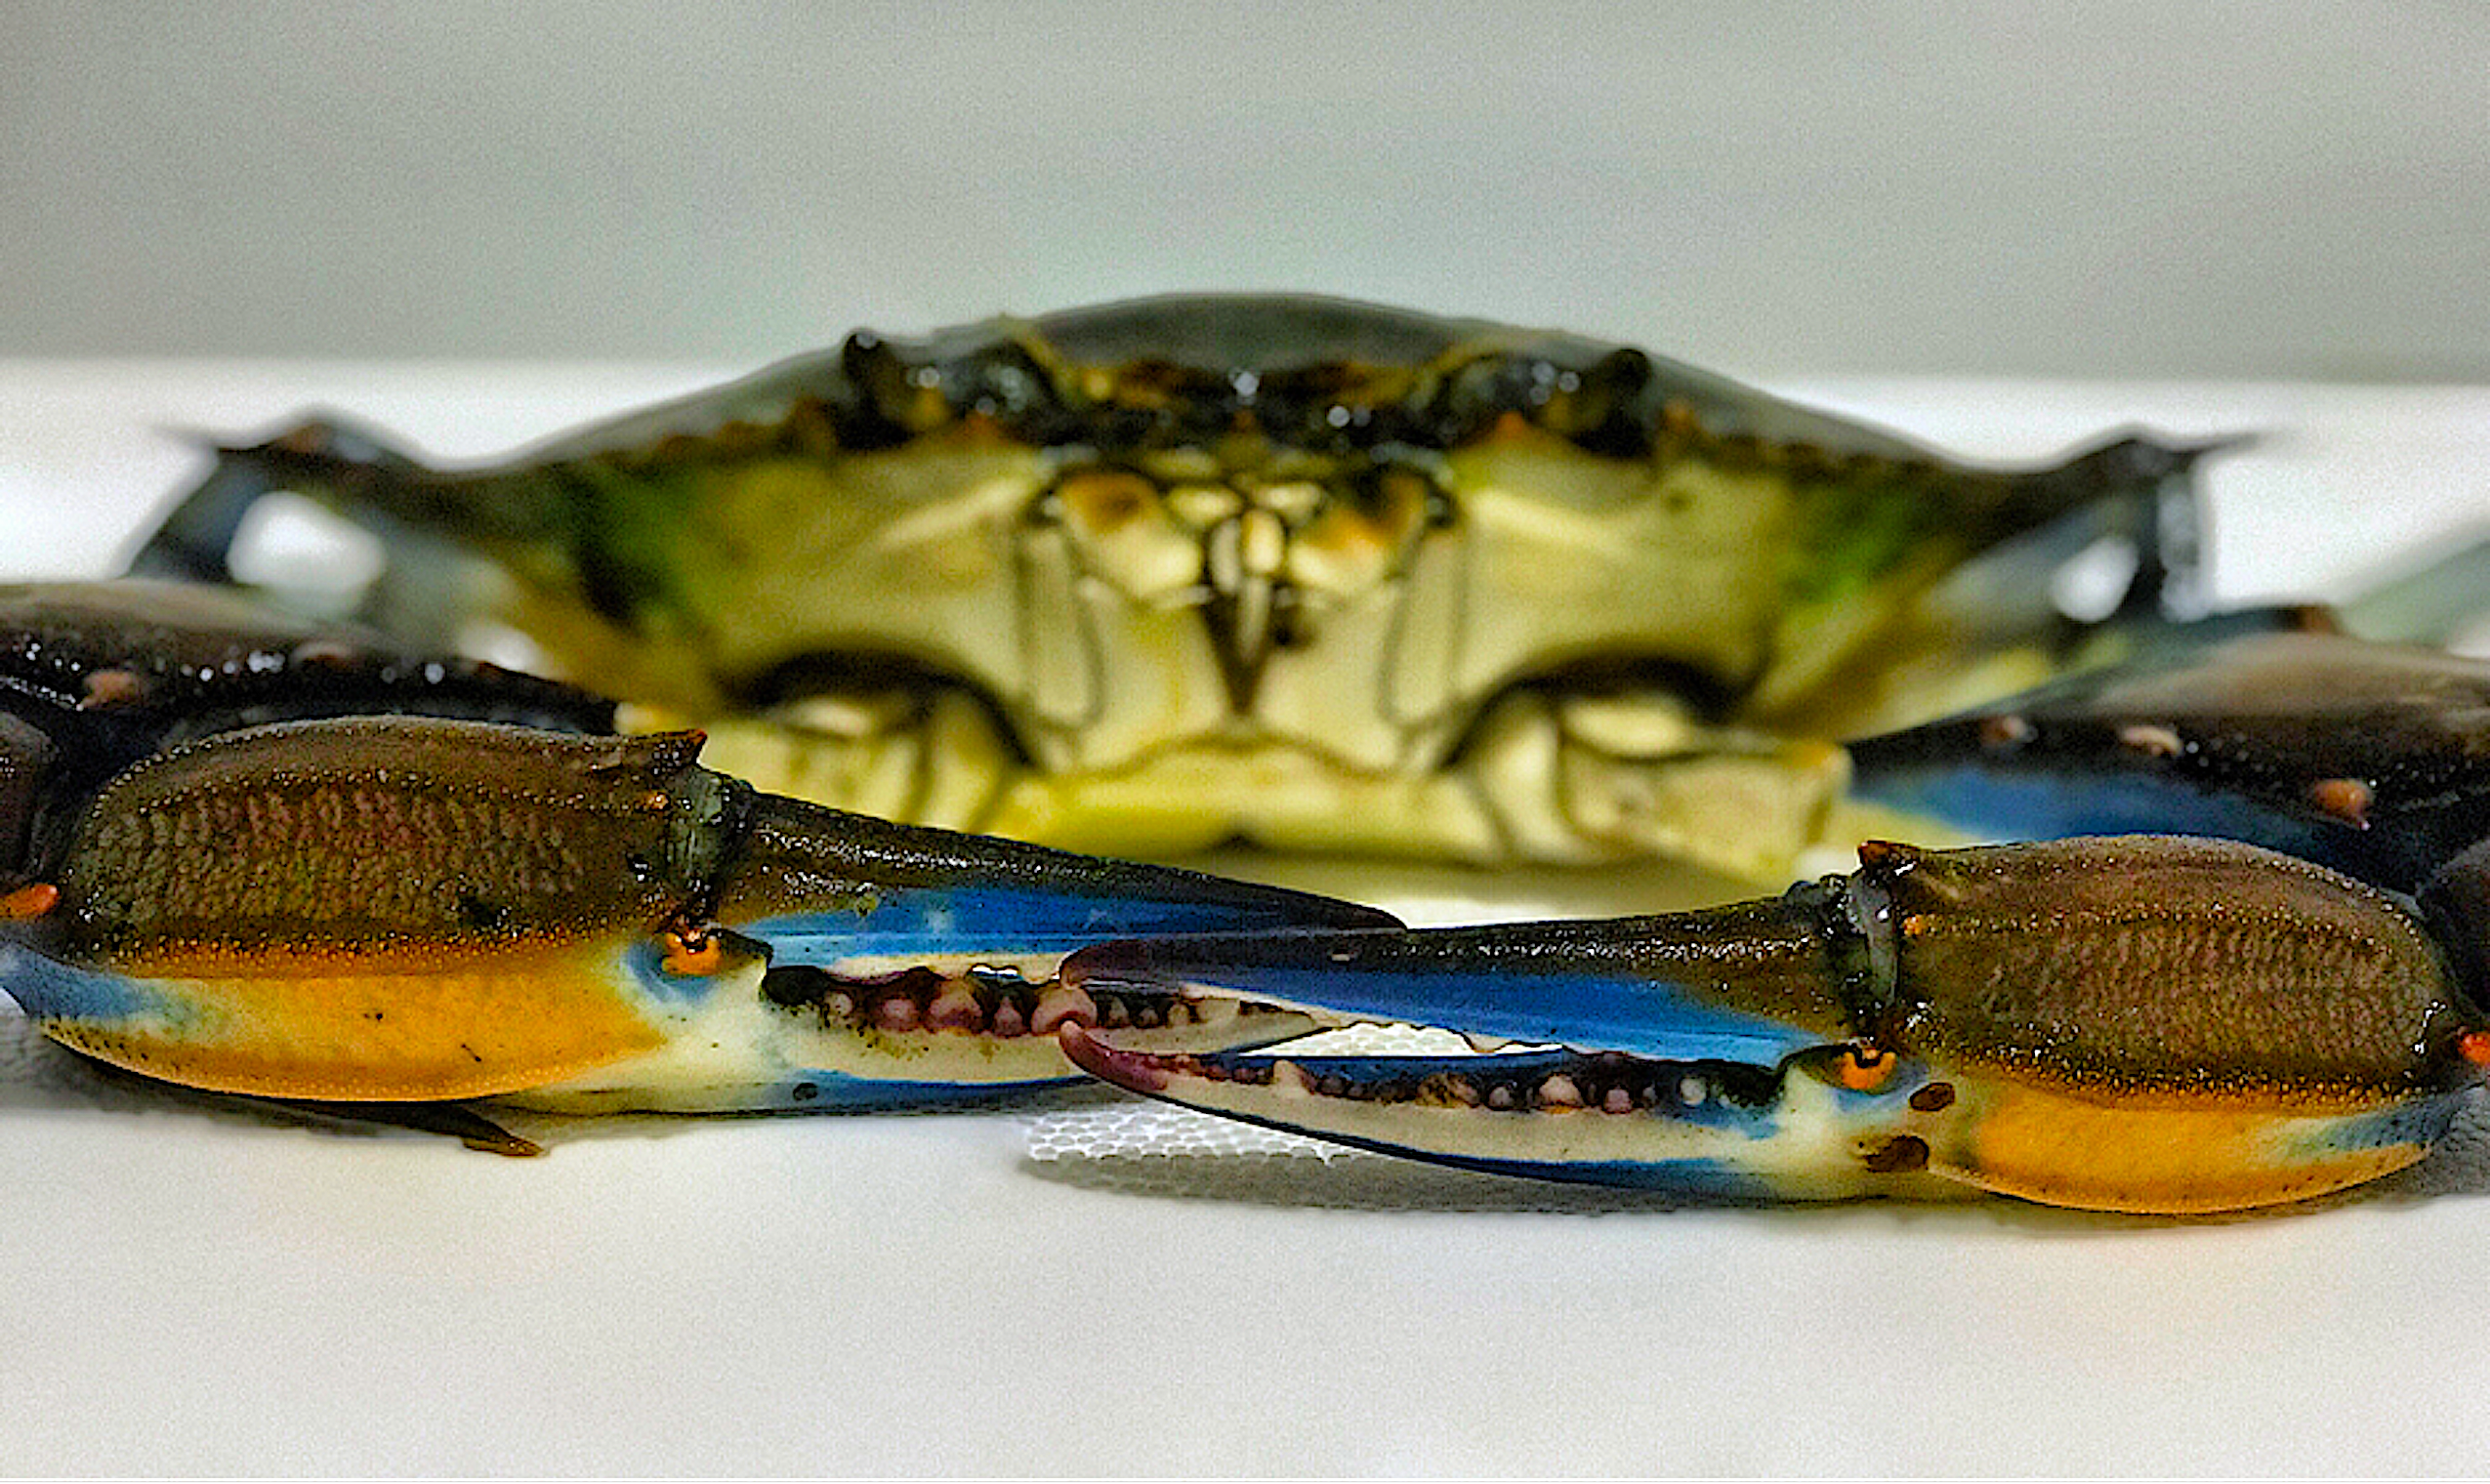 A blue crab